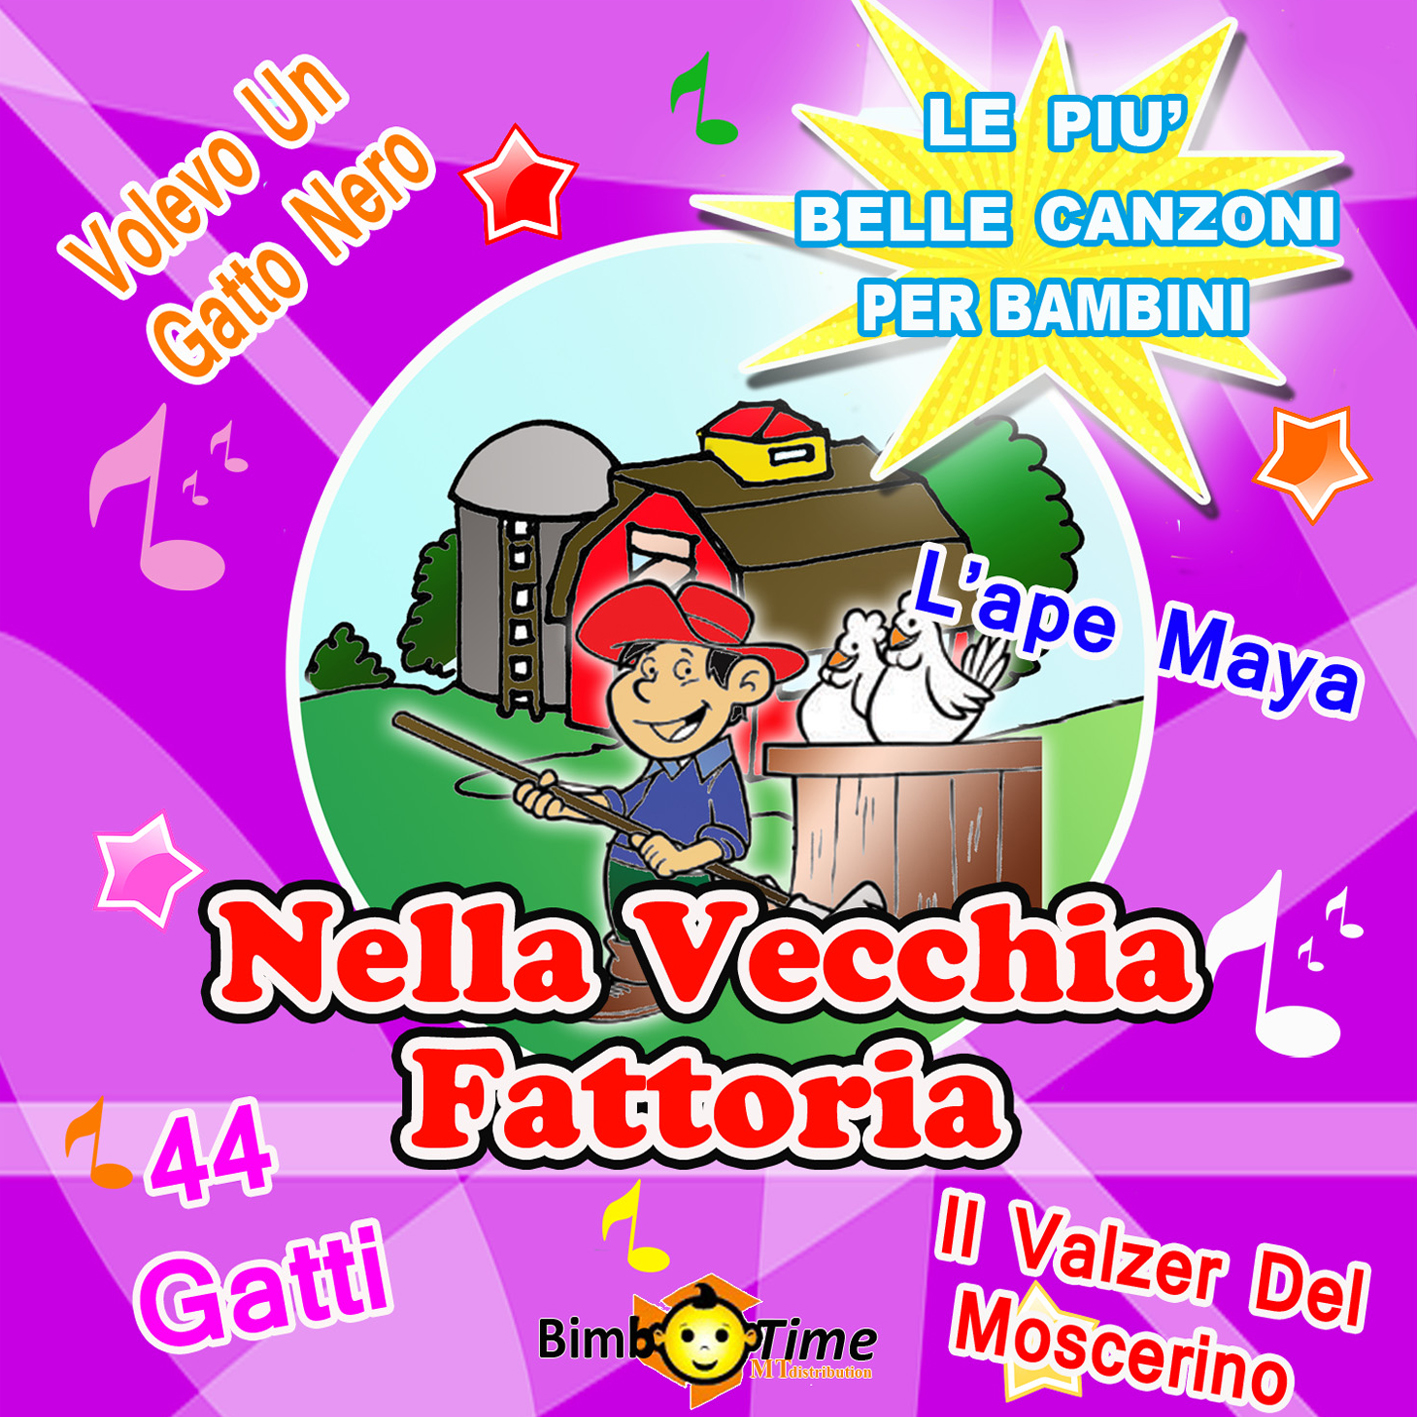 5 - Nella Vecchia Fattoria - Volevo Un Gatto Nero, 44 Gatti, L’Ape Maia, Il Valzer Del Moscerino, And Other 10 Hits